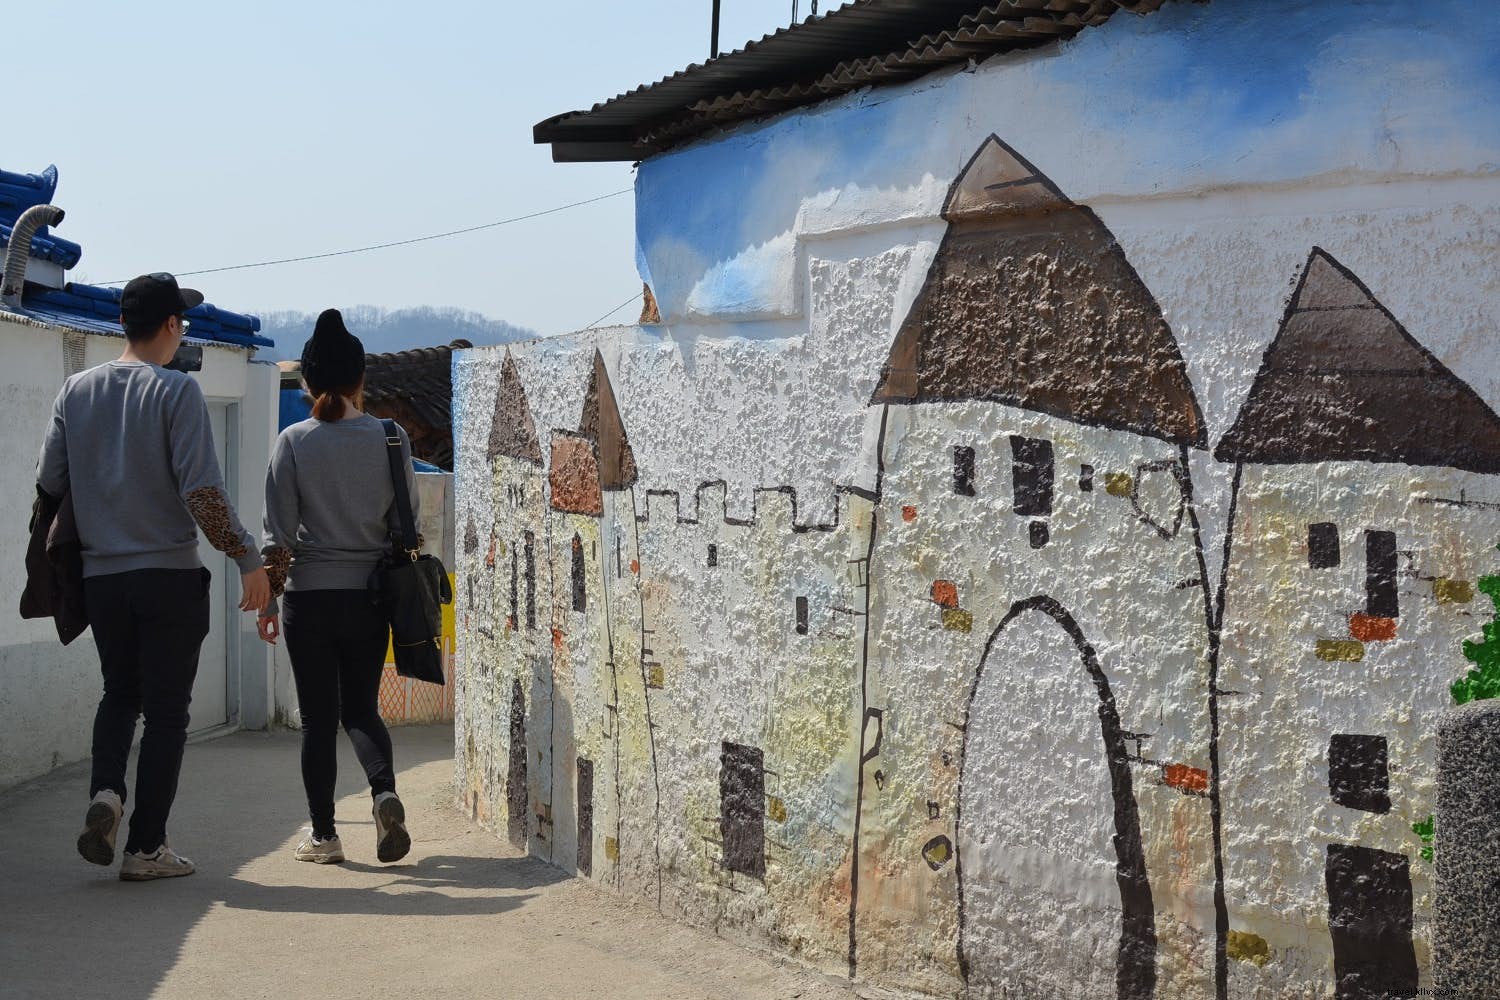 Panduan ke desa mural paling menawan di Korea Selatan 